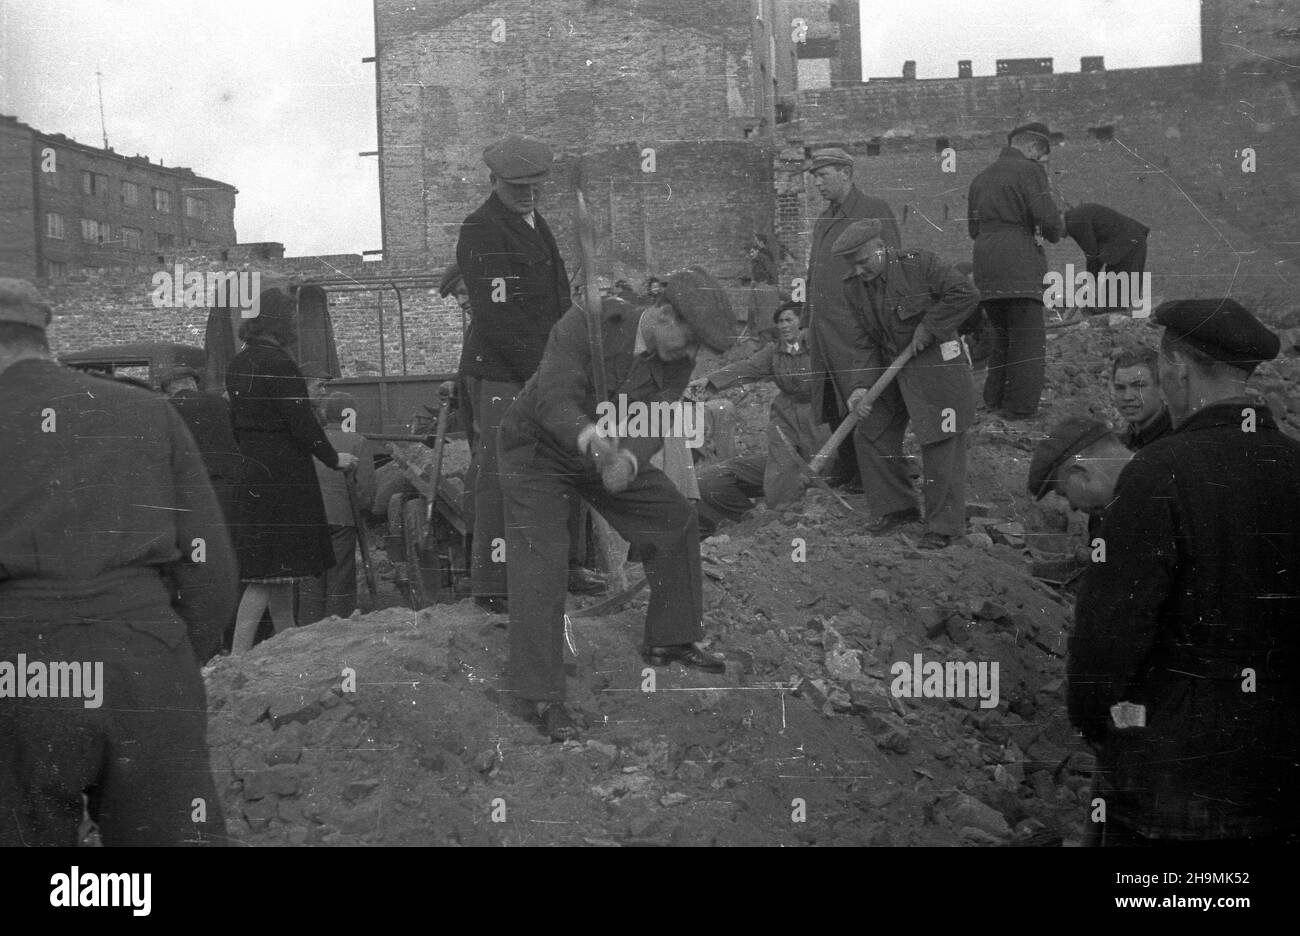 Warszawa, 1948-09-27. W odgruzowywaniu stolicy bior¹ udzia³ podwarszawscy ch³opi, cz³onkowie Polskiego Stronnictwa Ludowego (PSL) i Stronnictwa Ludowego (SL), pracownicy Filmu Polskiego, m³odzie¿. Nz. prace na Mokotowie wzd³u¿ ul. Pu³awskiej.  PAP      Warsaw, Sept. 27, 1948. Rubble from Warsaw was removed by farmers living near Warsaw, members of the Polish Peasant Party (PSL) and the Peasant Party  (SL), Film Polski employees and youth. Pictured: Work in Mokotow on Pulawska Street.   mw  PAP Stock Photo